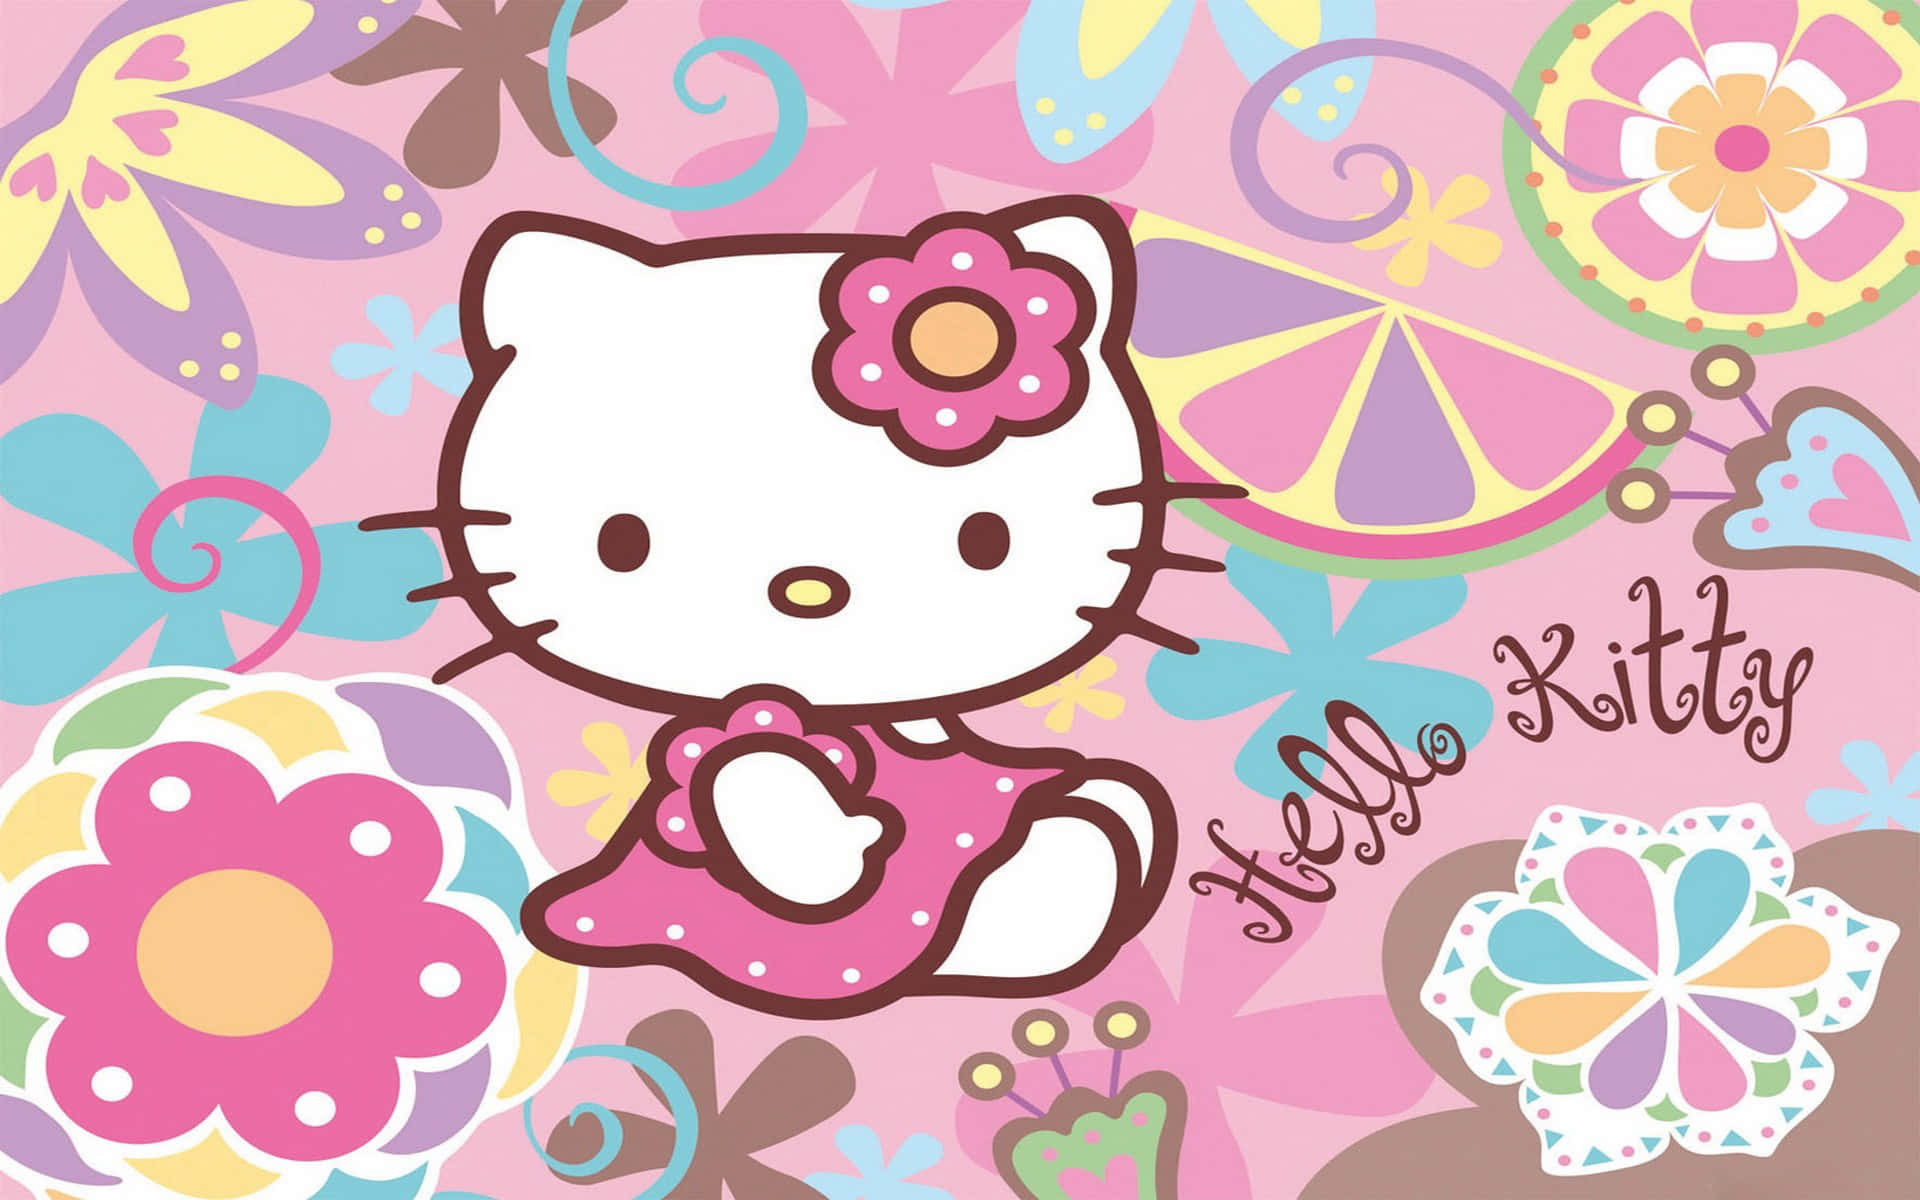 Descargael Fondo De Pantalla De Hello Kitty Para Pc Desde Wallpapers.com Para Todos Tus Dispositivos. Fondo de pantalla